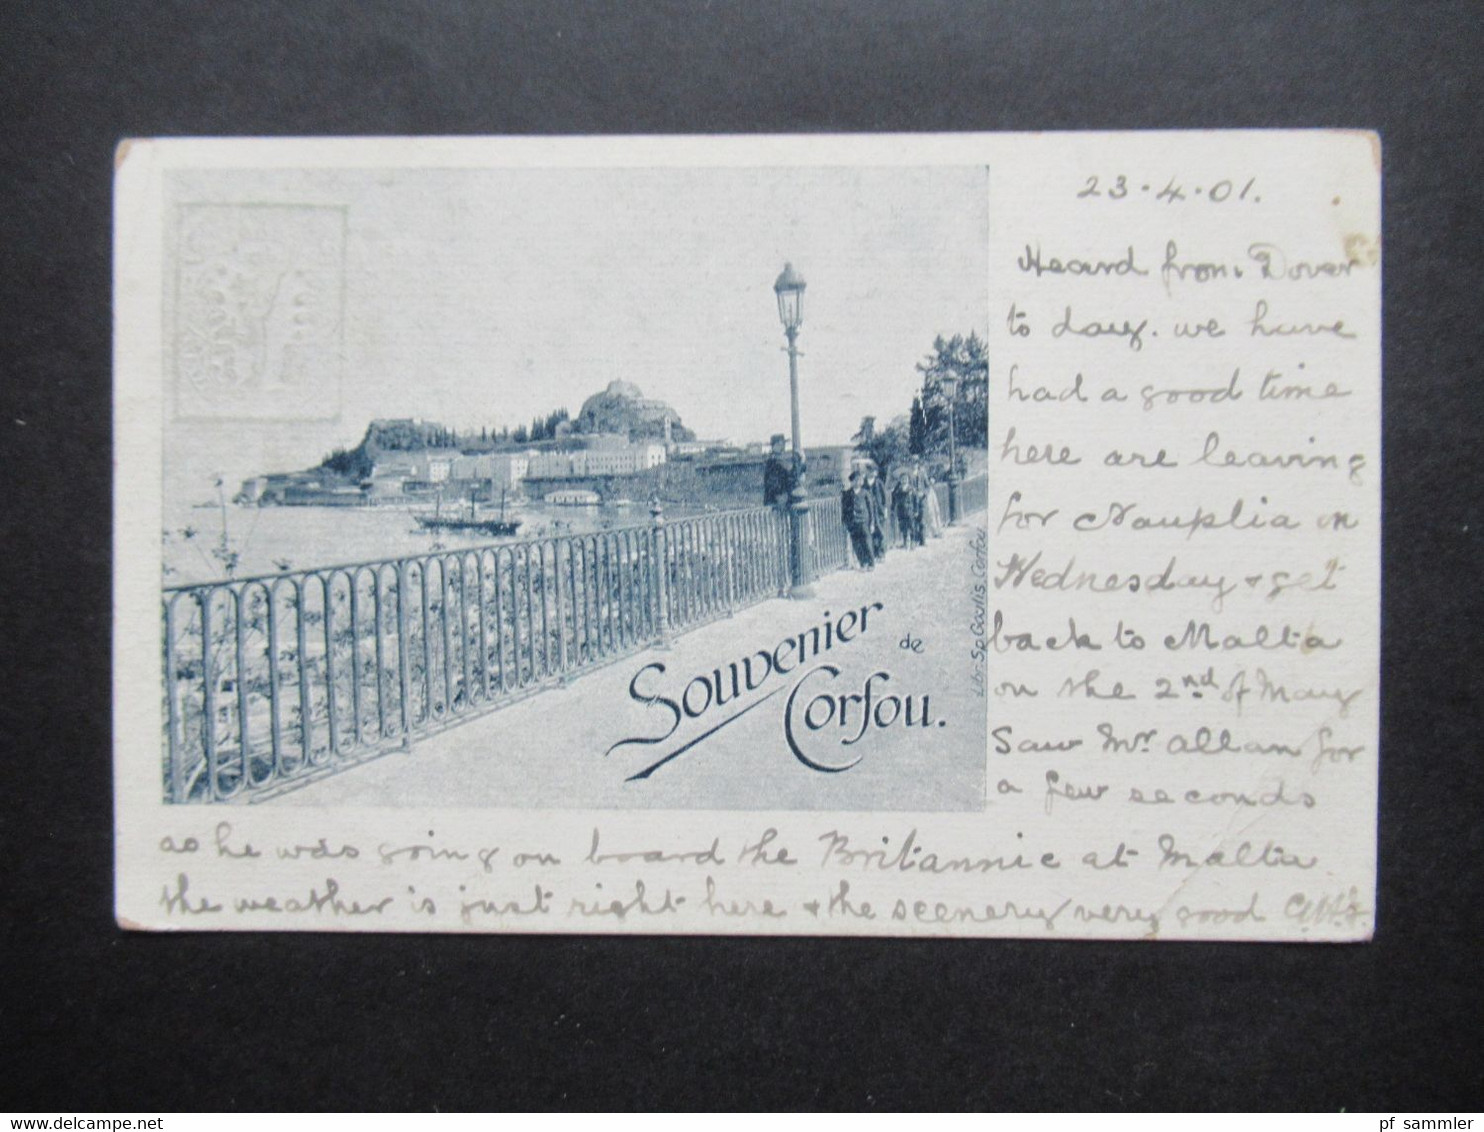 Griechenland 1901 Ganzsache / Bildpostkarte Souvenir De Corfou Libr. Sp. Goulis Corfou Nach Chatham England Gesendet - Postwaardestukken